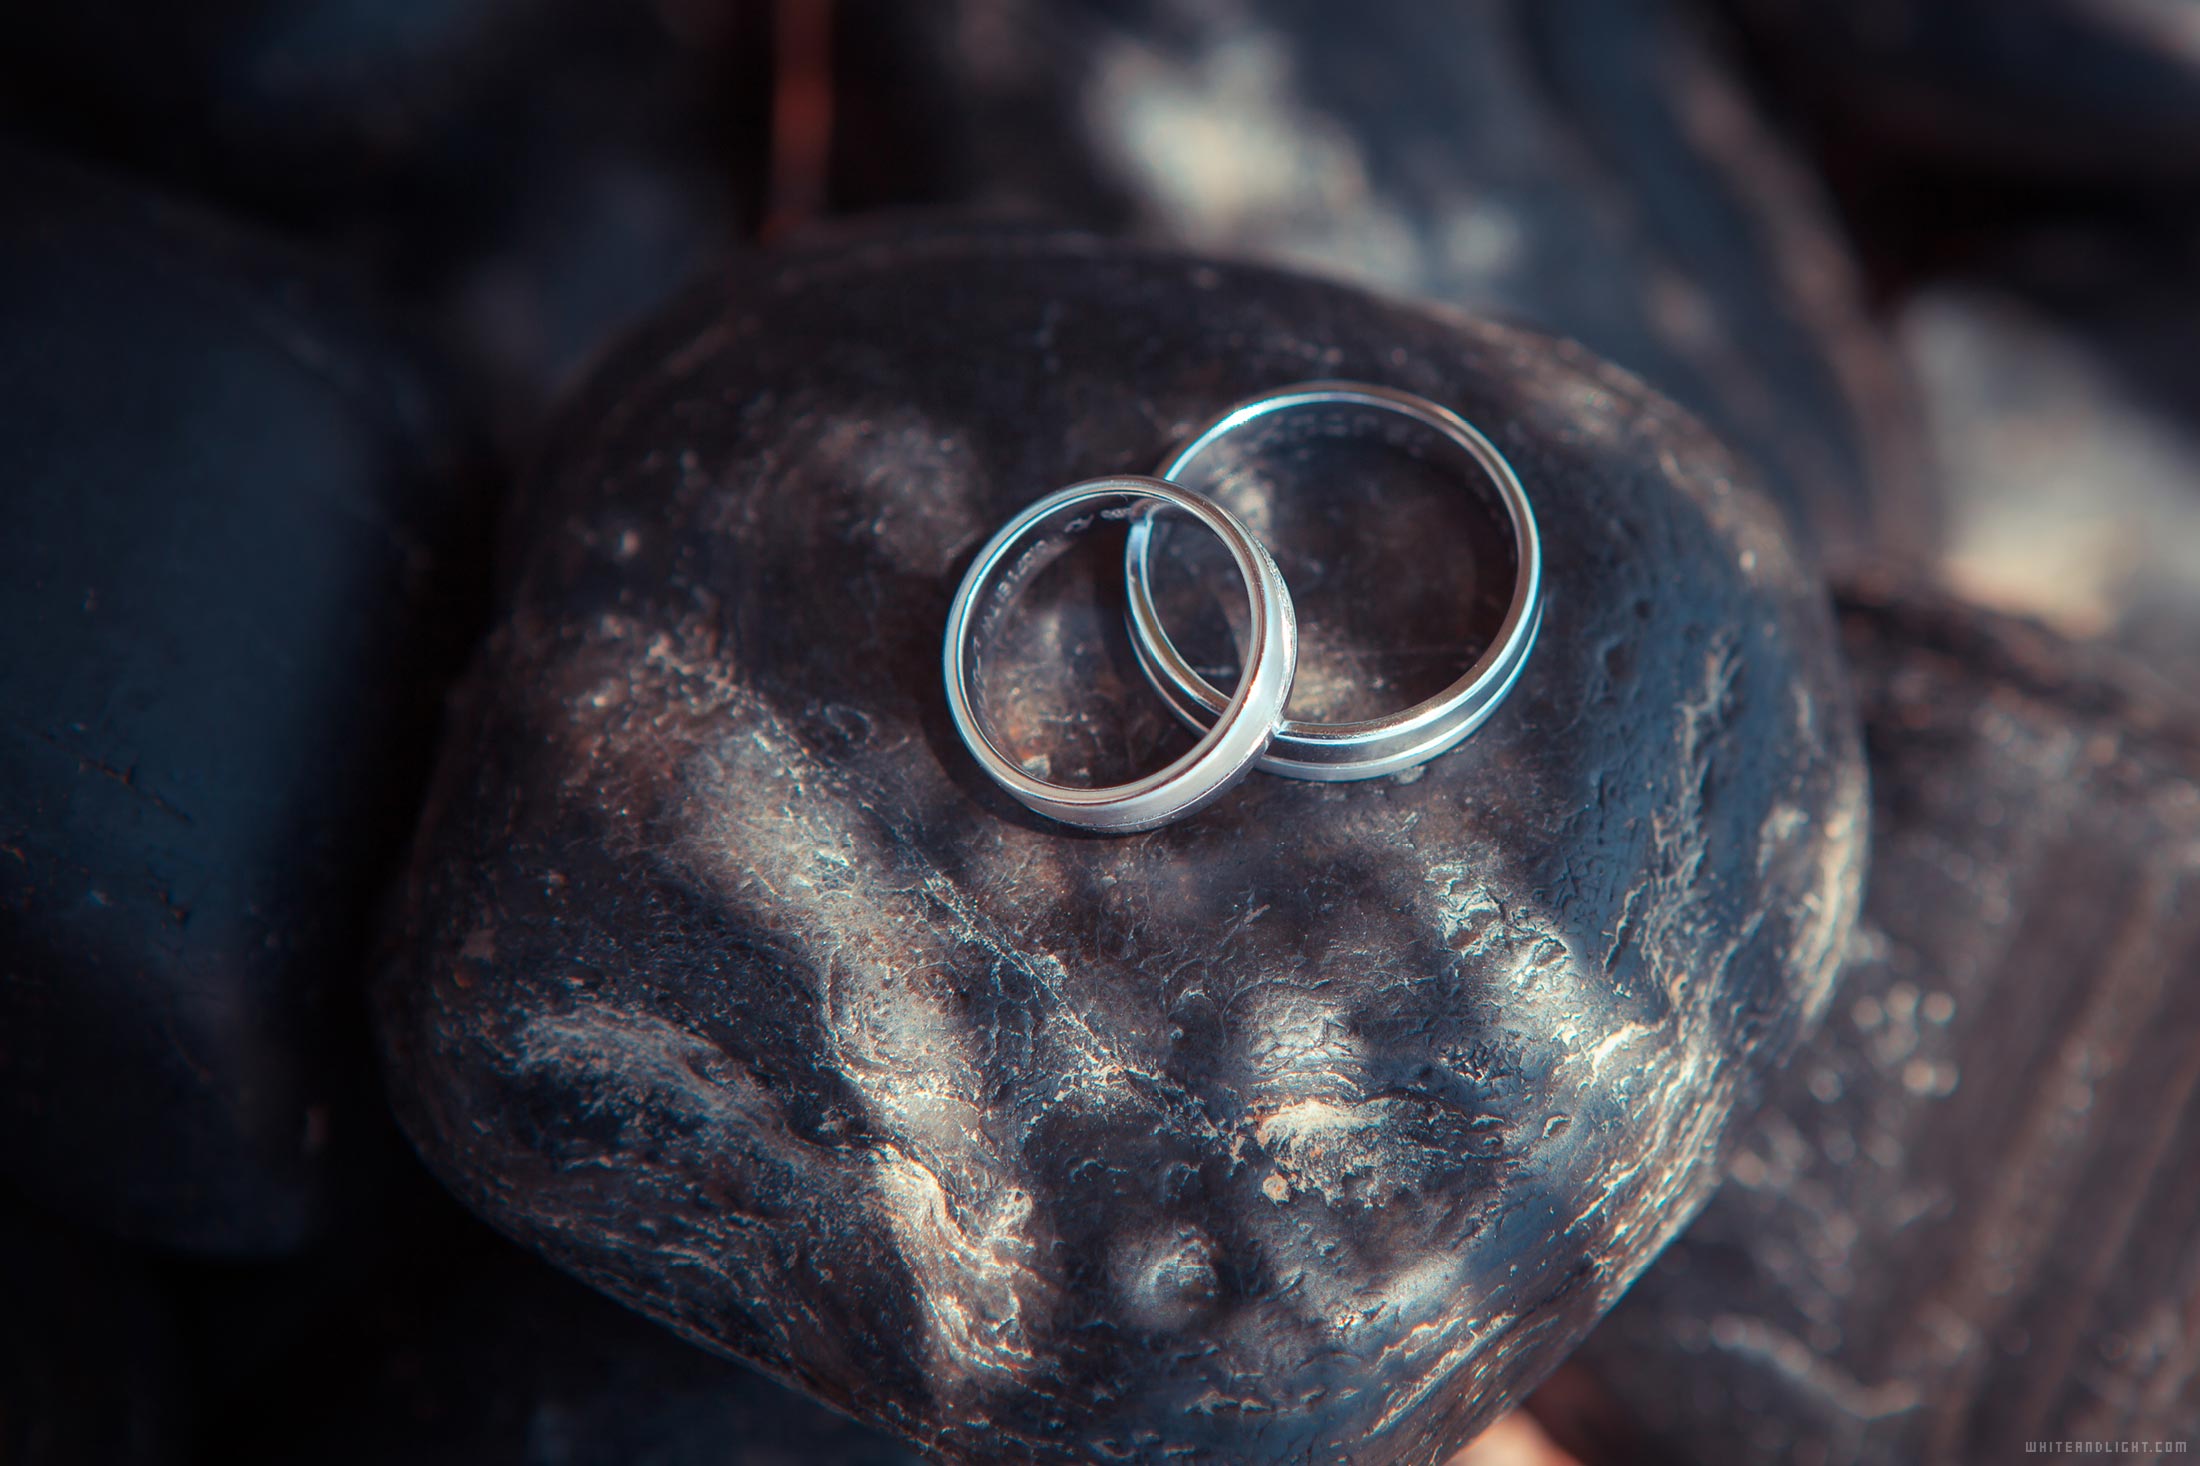 wedding rings for women